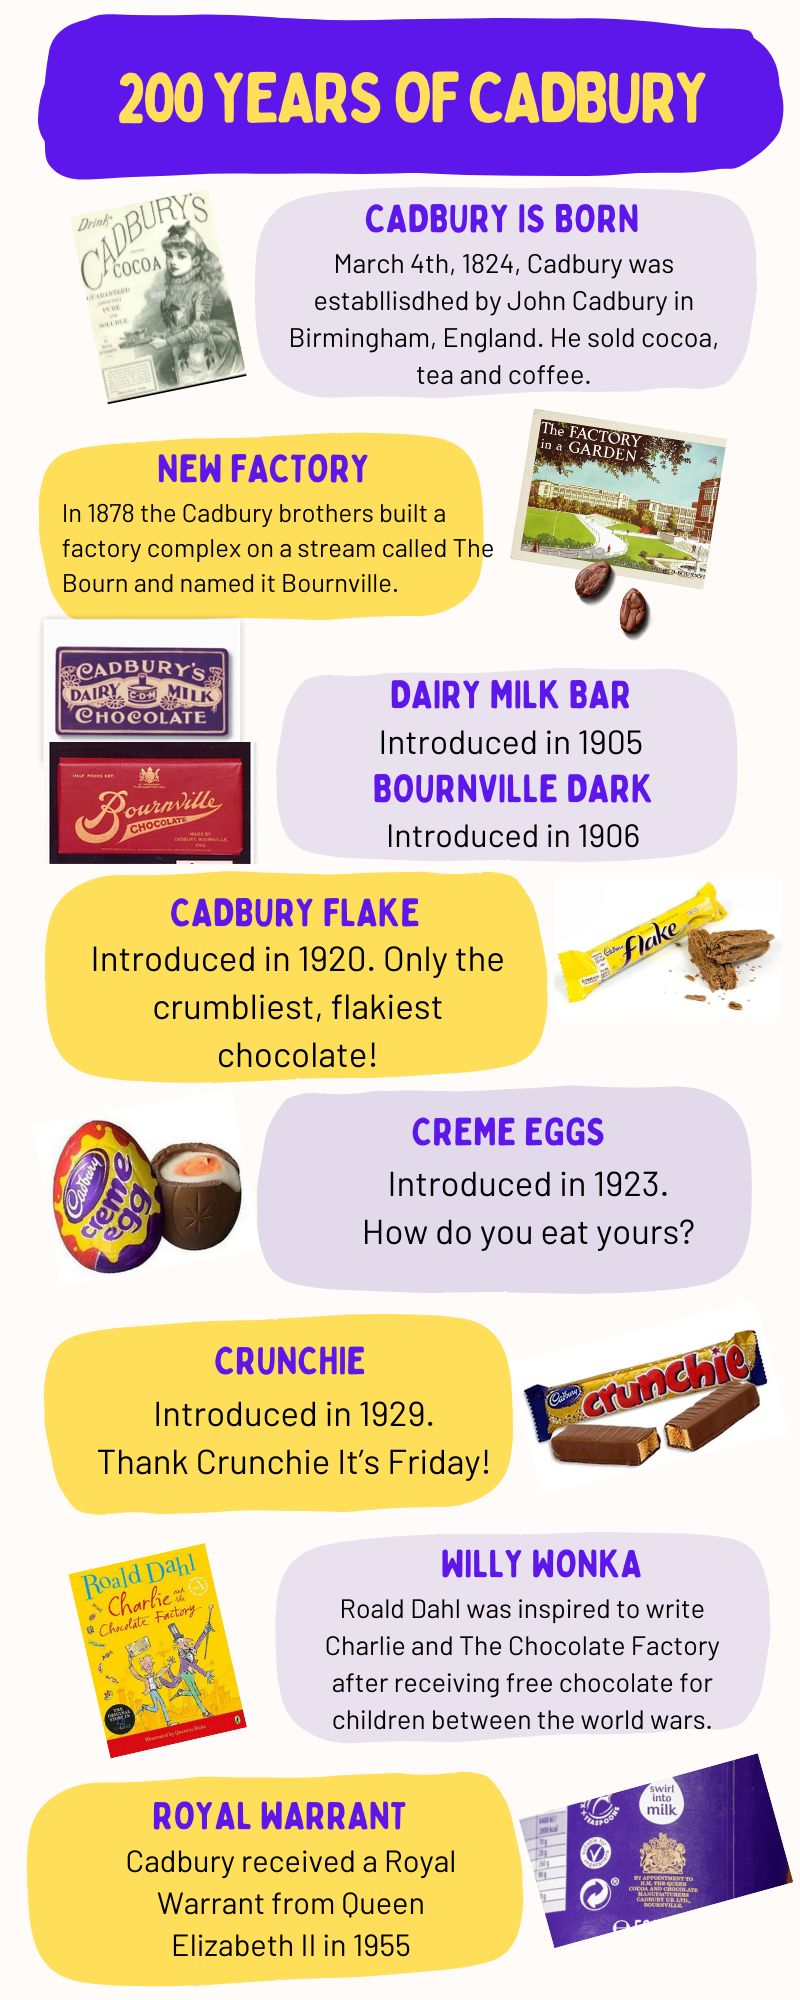 200 Years of Cadbury Chocolate